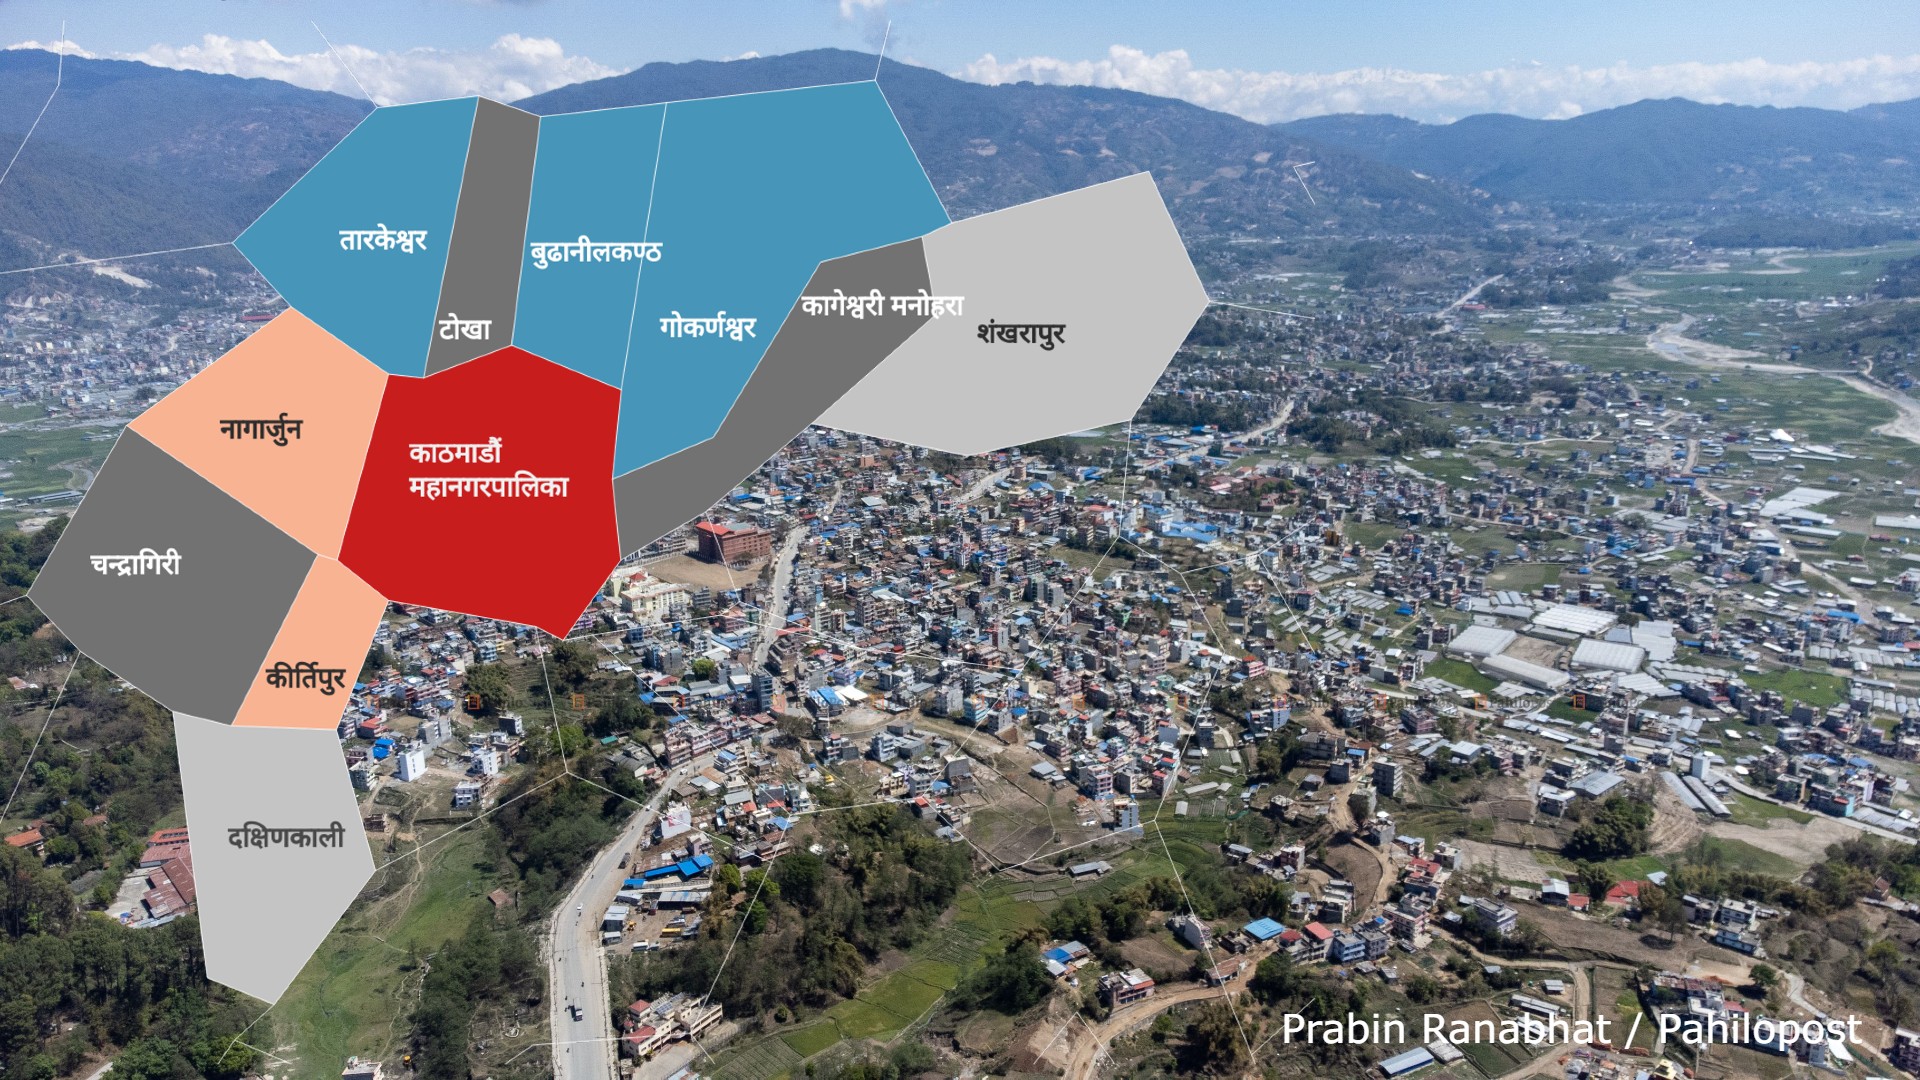 कसरी गयो काठमाडौं महानगरको जनसङ्ख्या 'माइनस'तिर? छिमेकी नगरतिर भने लगातार उकालो